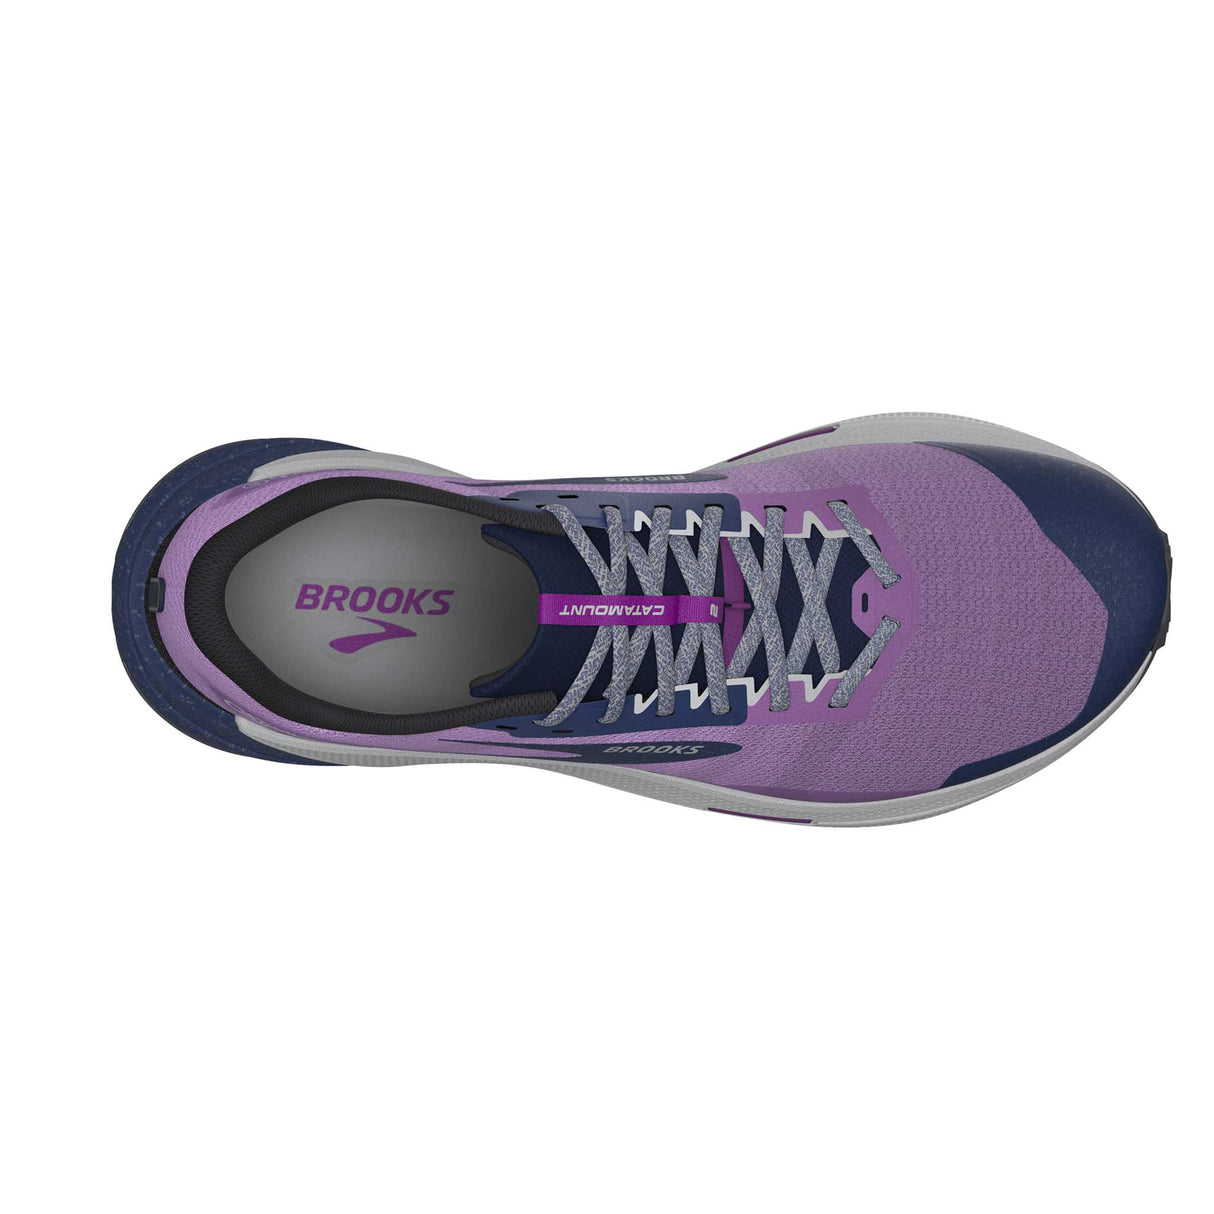 Brooks Catamount 2 chaussures de course à pied trail femme empeigne- Violet / Navy / Oyster